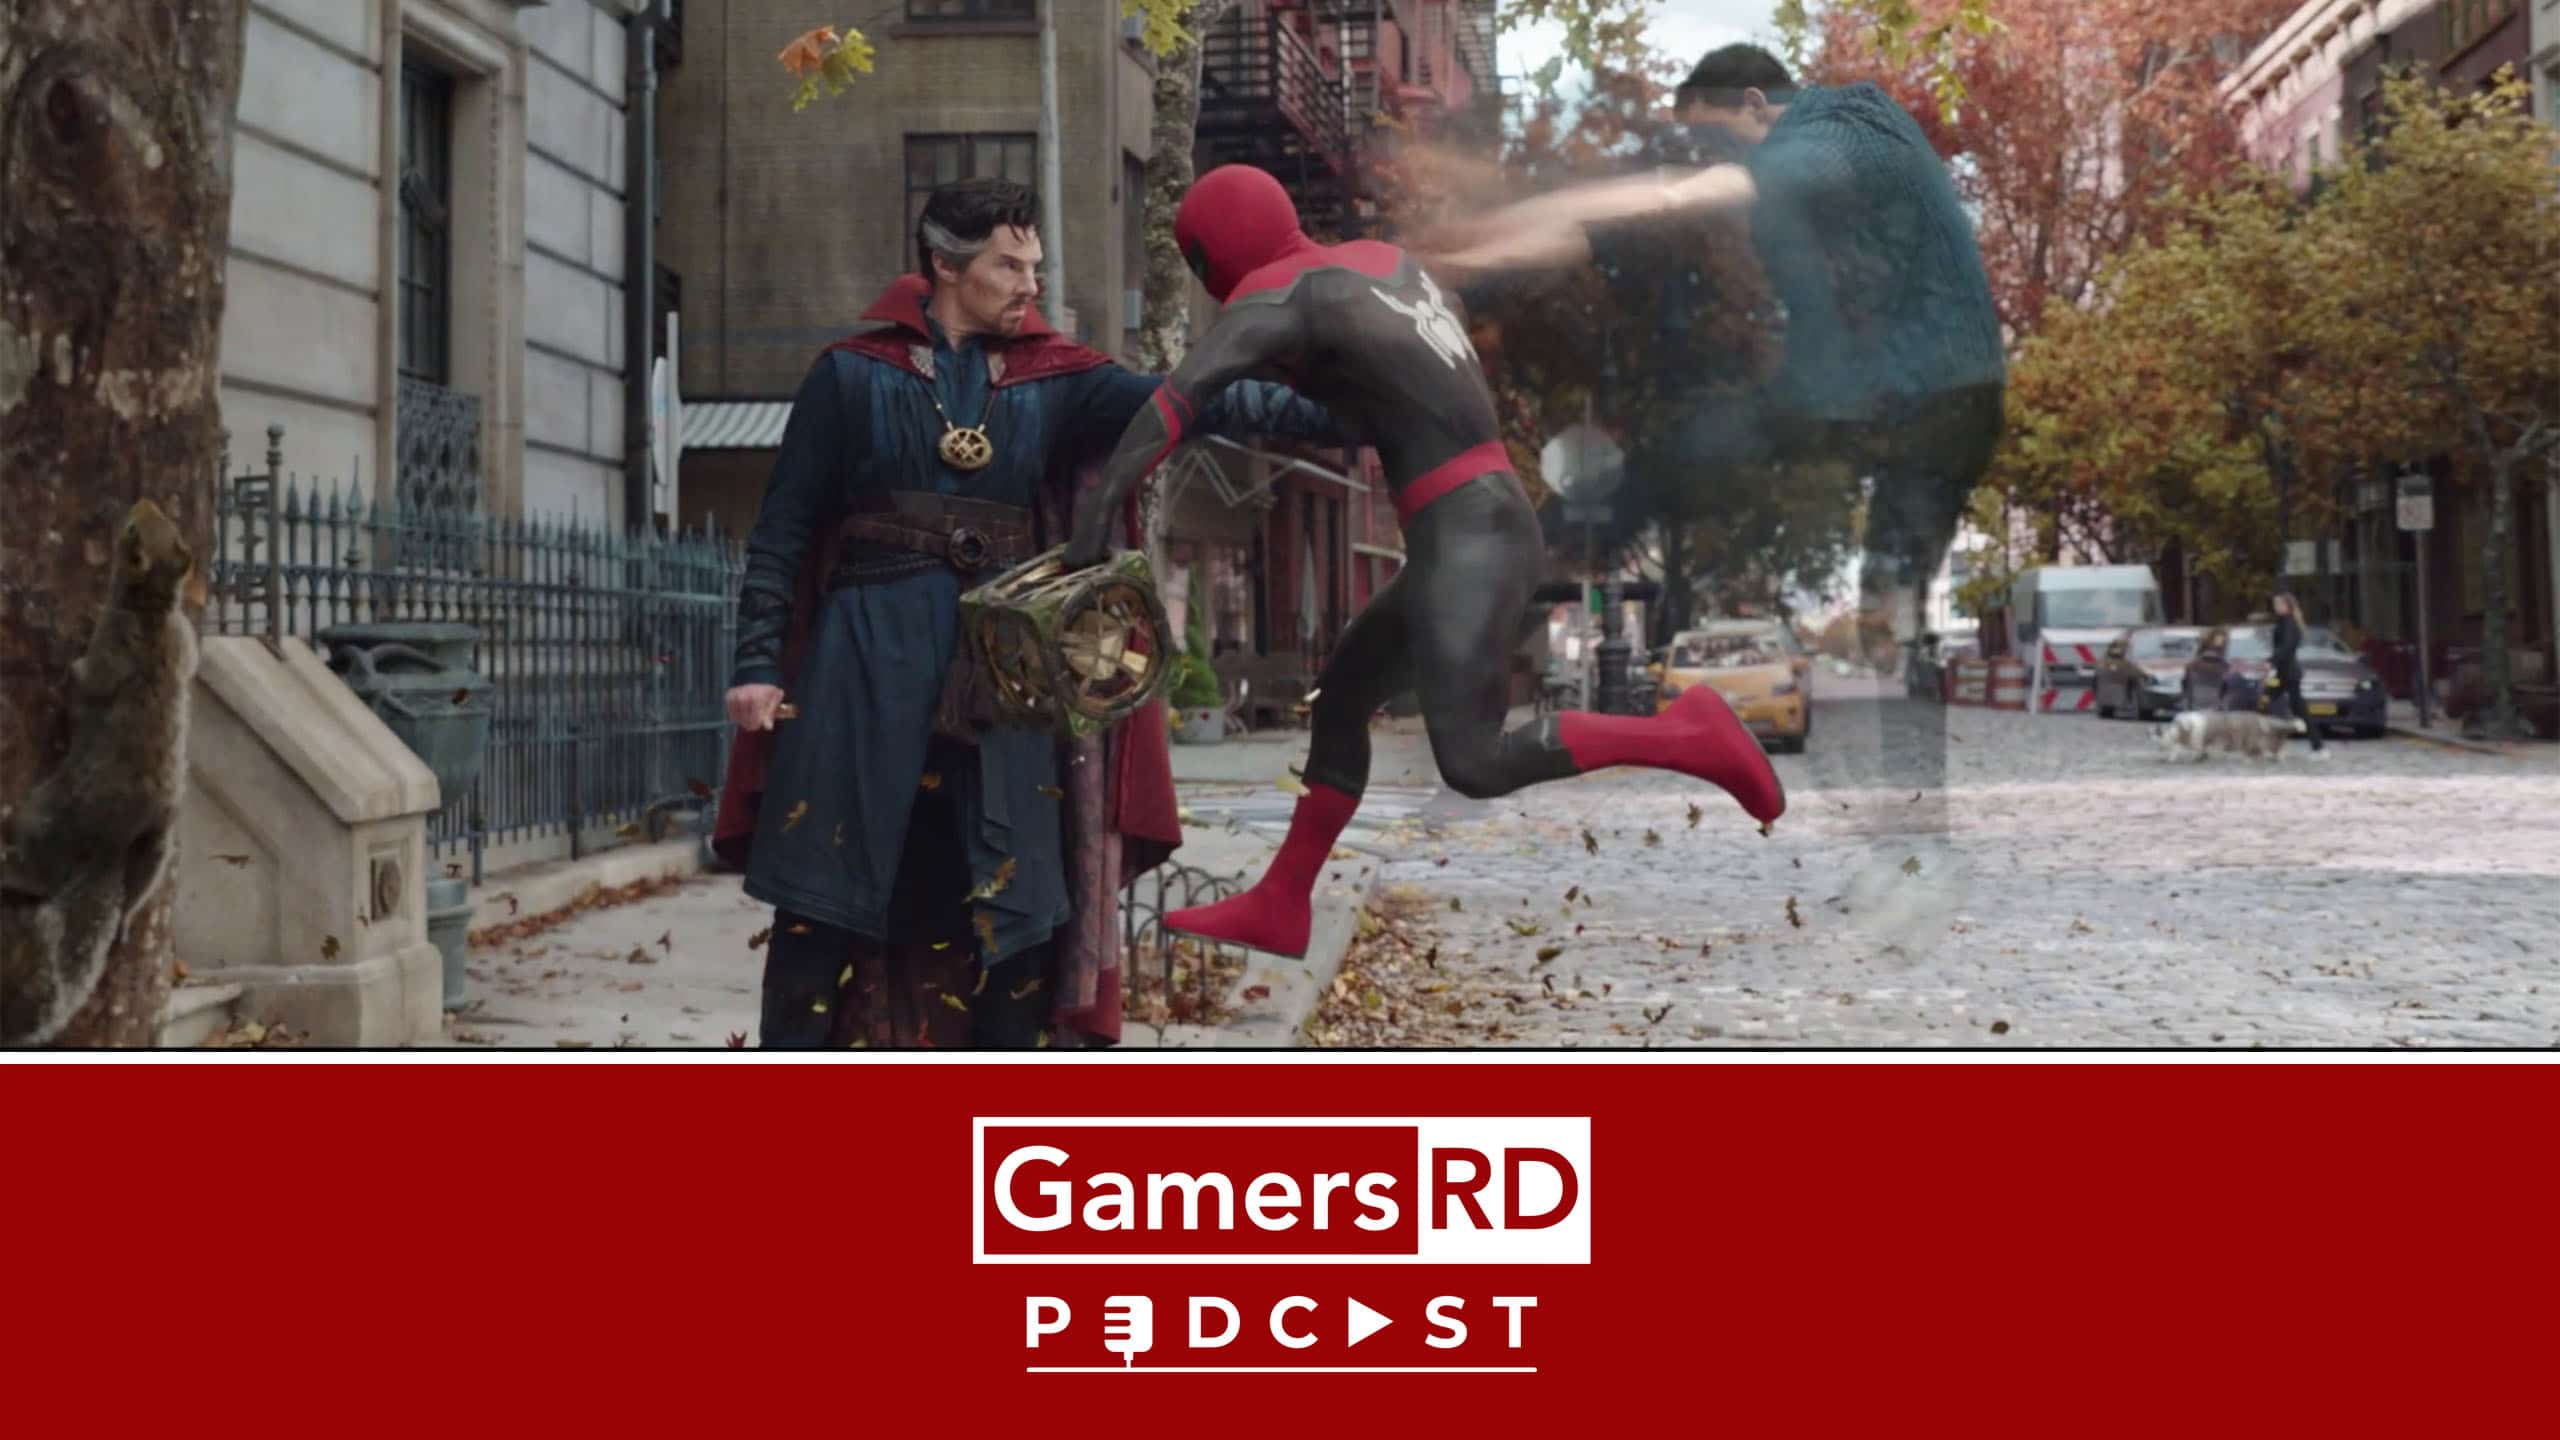 GamersRD Podcast #164 Impresiones del trailer de la película Spider-Man No Way Home Sony